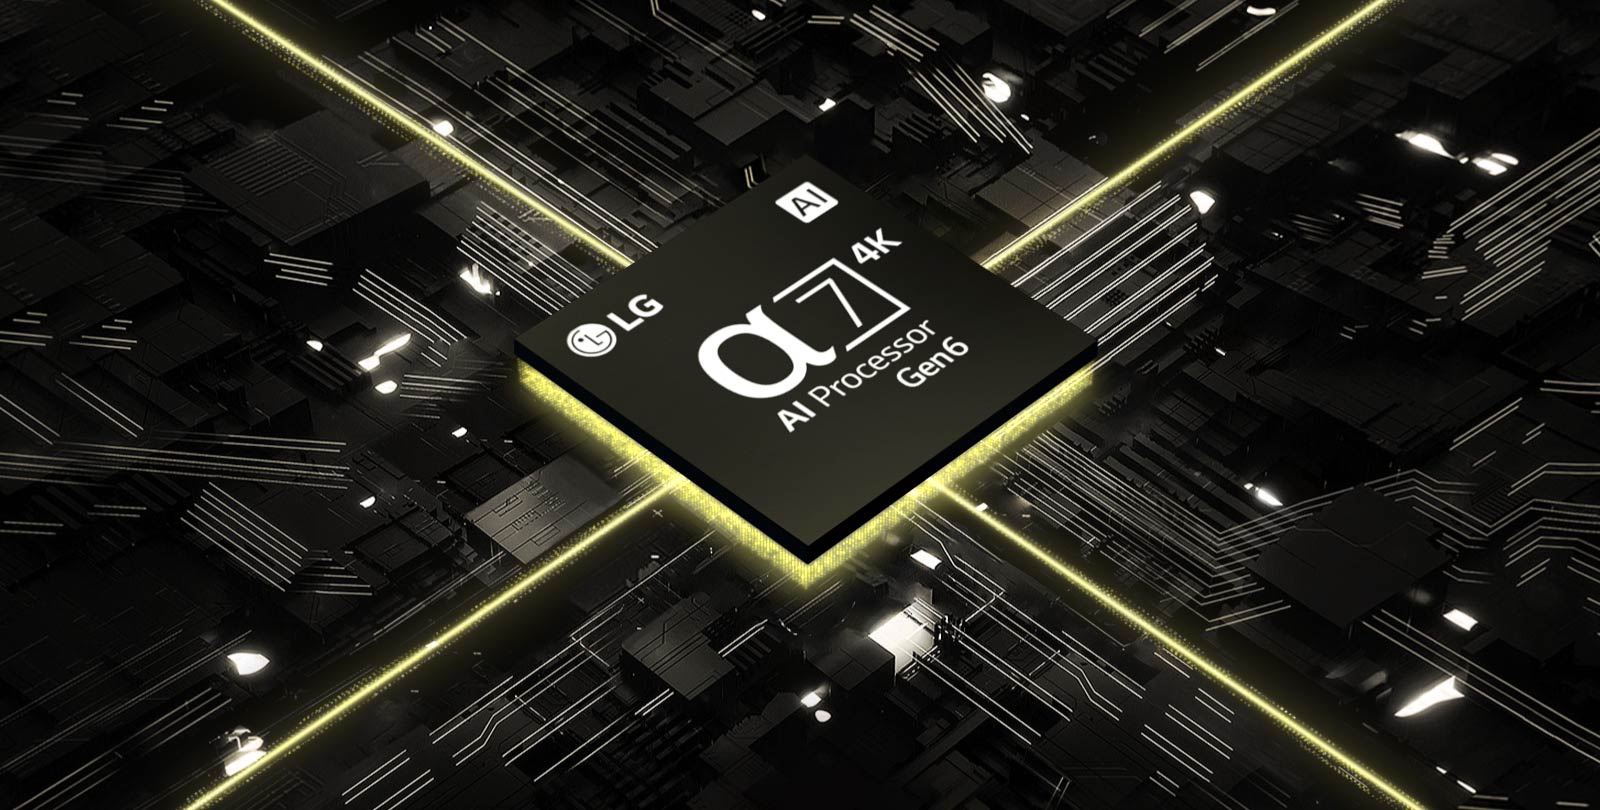 A videóban a 6. generációs α7 AI 4K processzor látható egy nyomtatott áramkörön. Az áramkör világít, és a chip sárga fényt áraszt, ami a teljesítményét jelképezi.